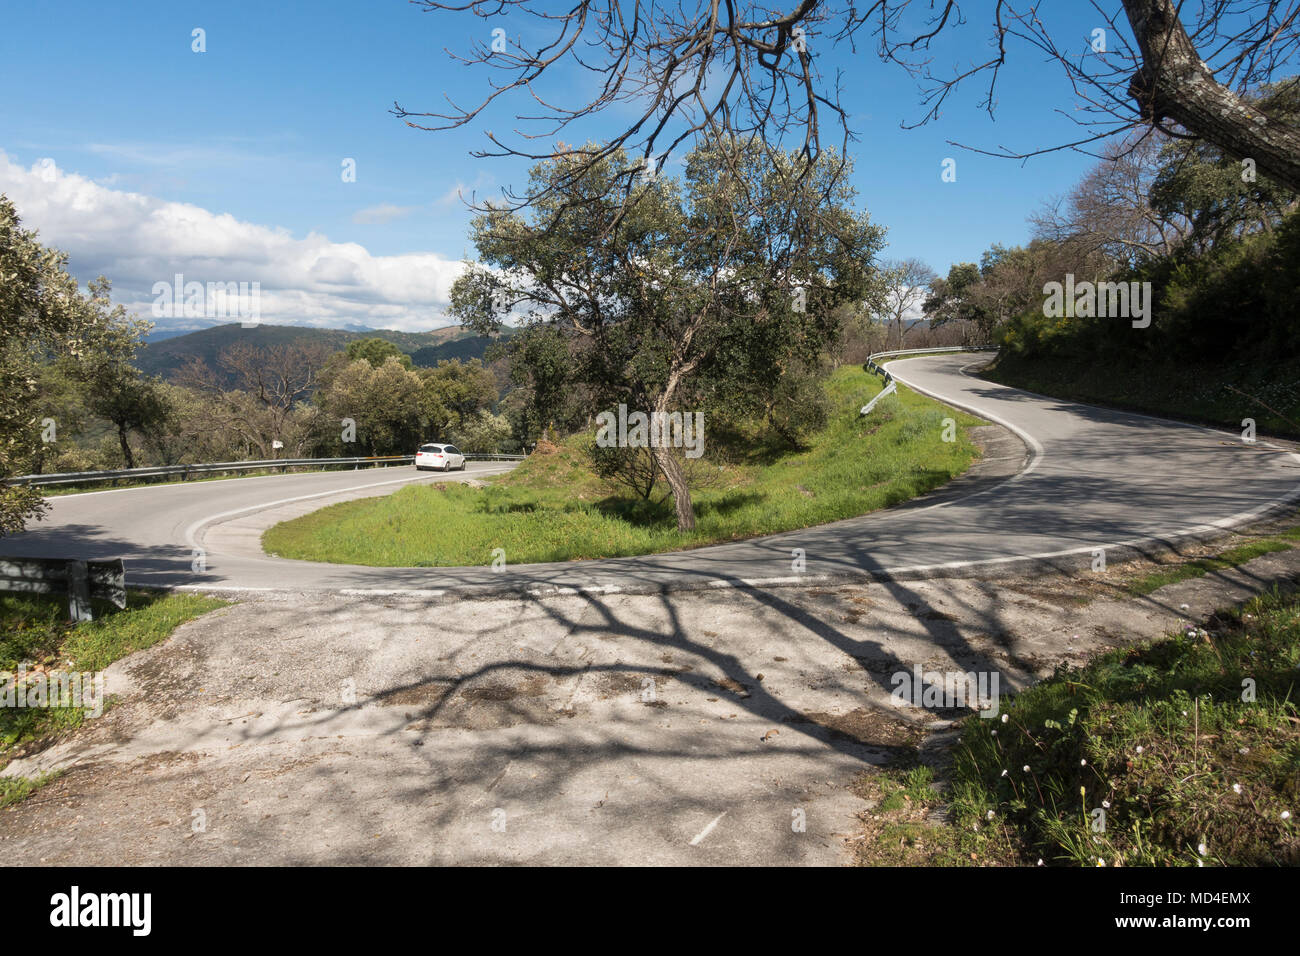 Virage en épingle, route sinueuse à travers la campagne espagnole, avec voiture blanche, Andalousie, espagne. Banque D'Images